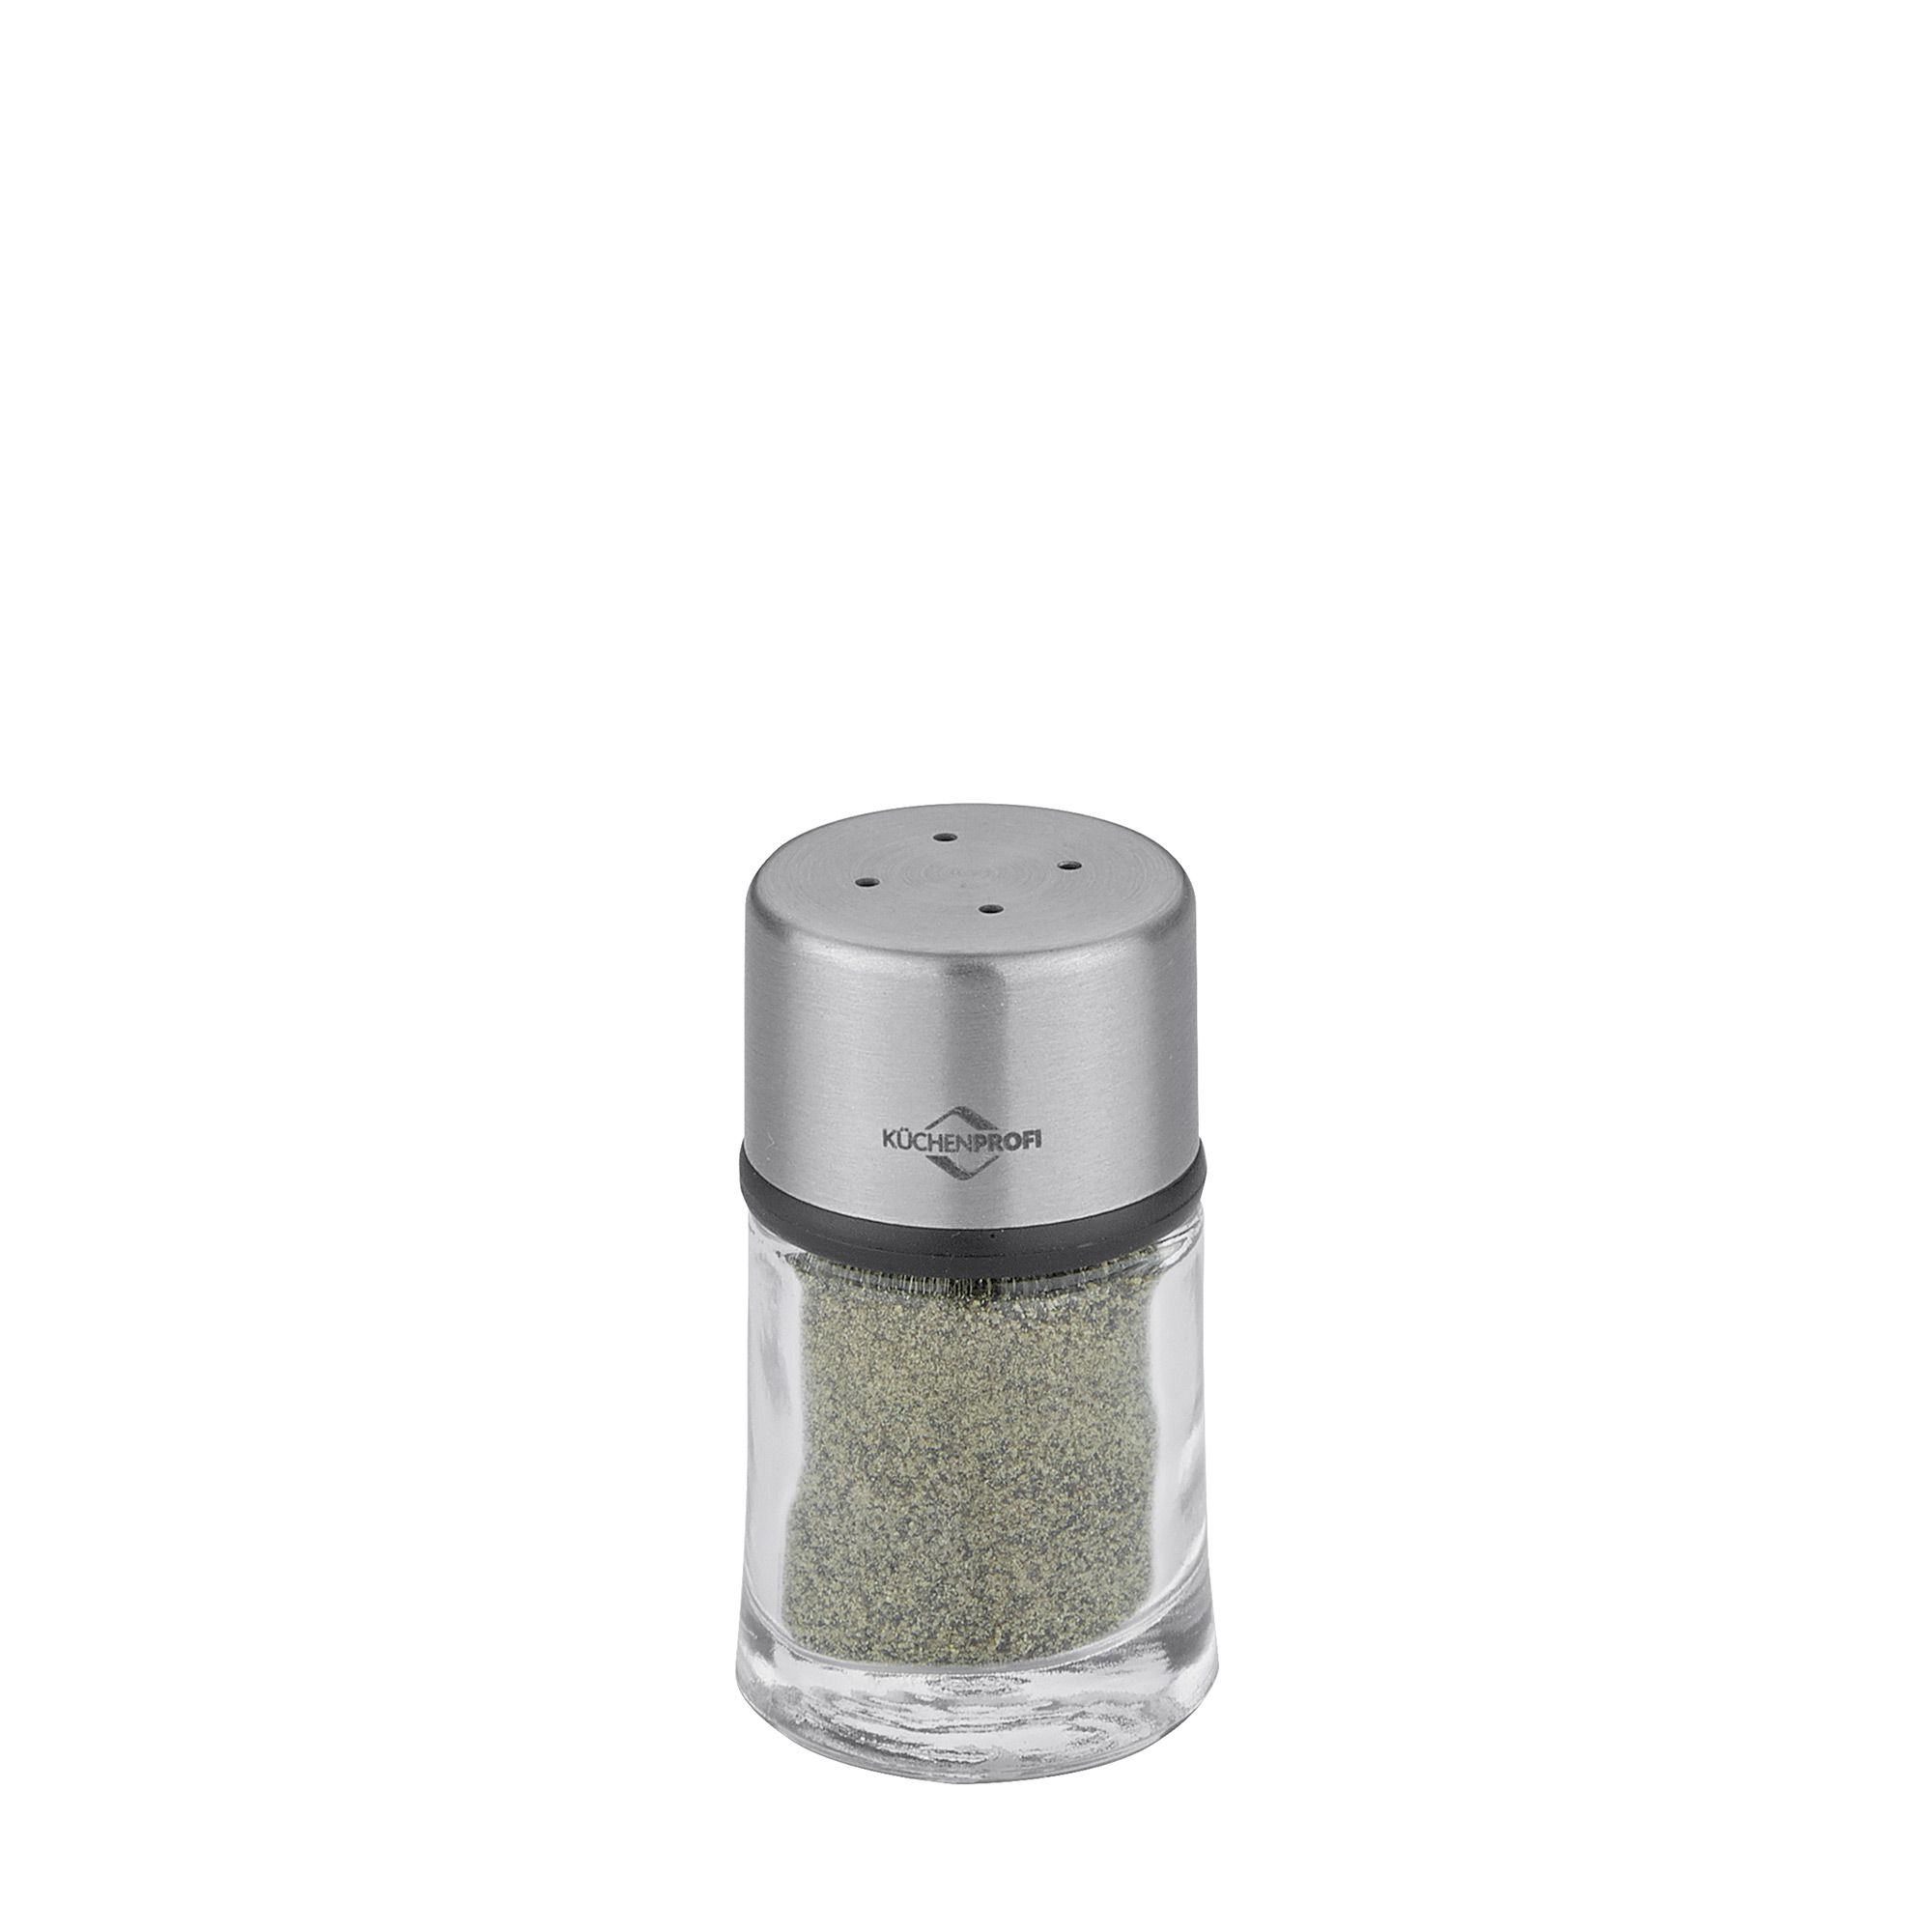 Küchenprofi - Pepper shaker/Salt shaker